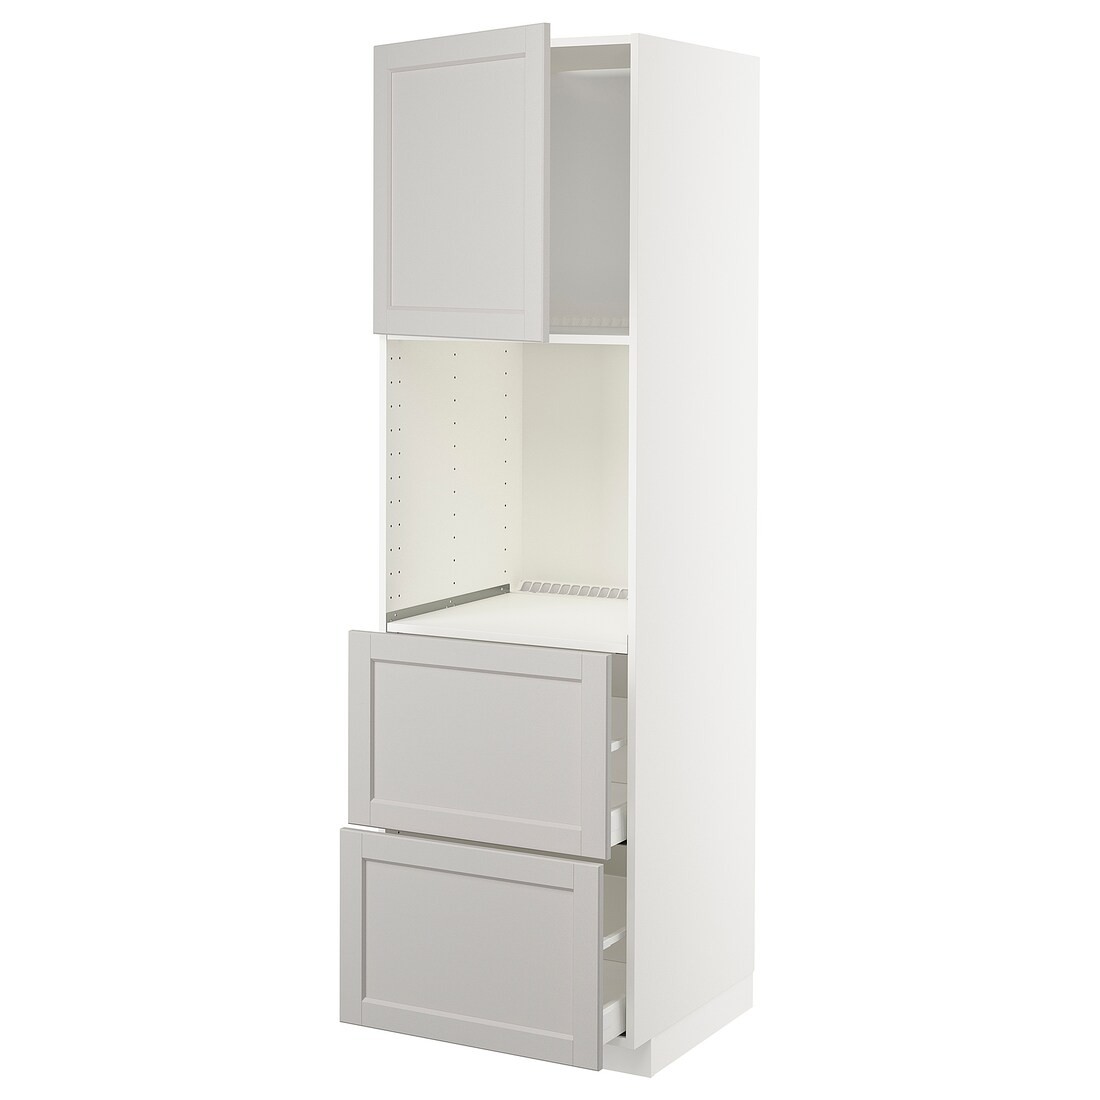 METOD МЕТОД / MAXIMERA МАКСИМЕРА Высокий шкаф для духовки с дверцей / ящиками, белый / Lerhyttan светло-серый, 60x60x200 см